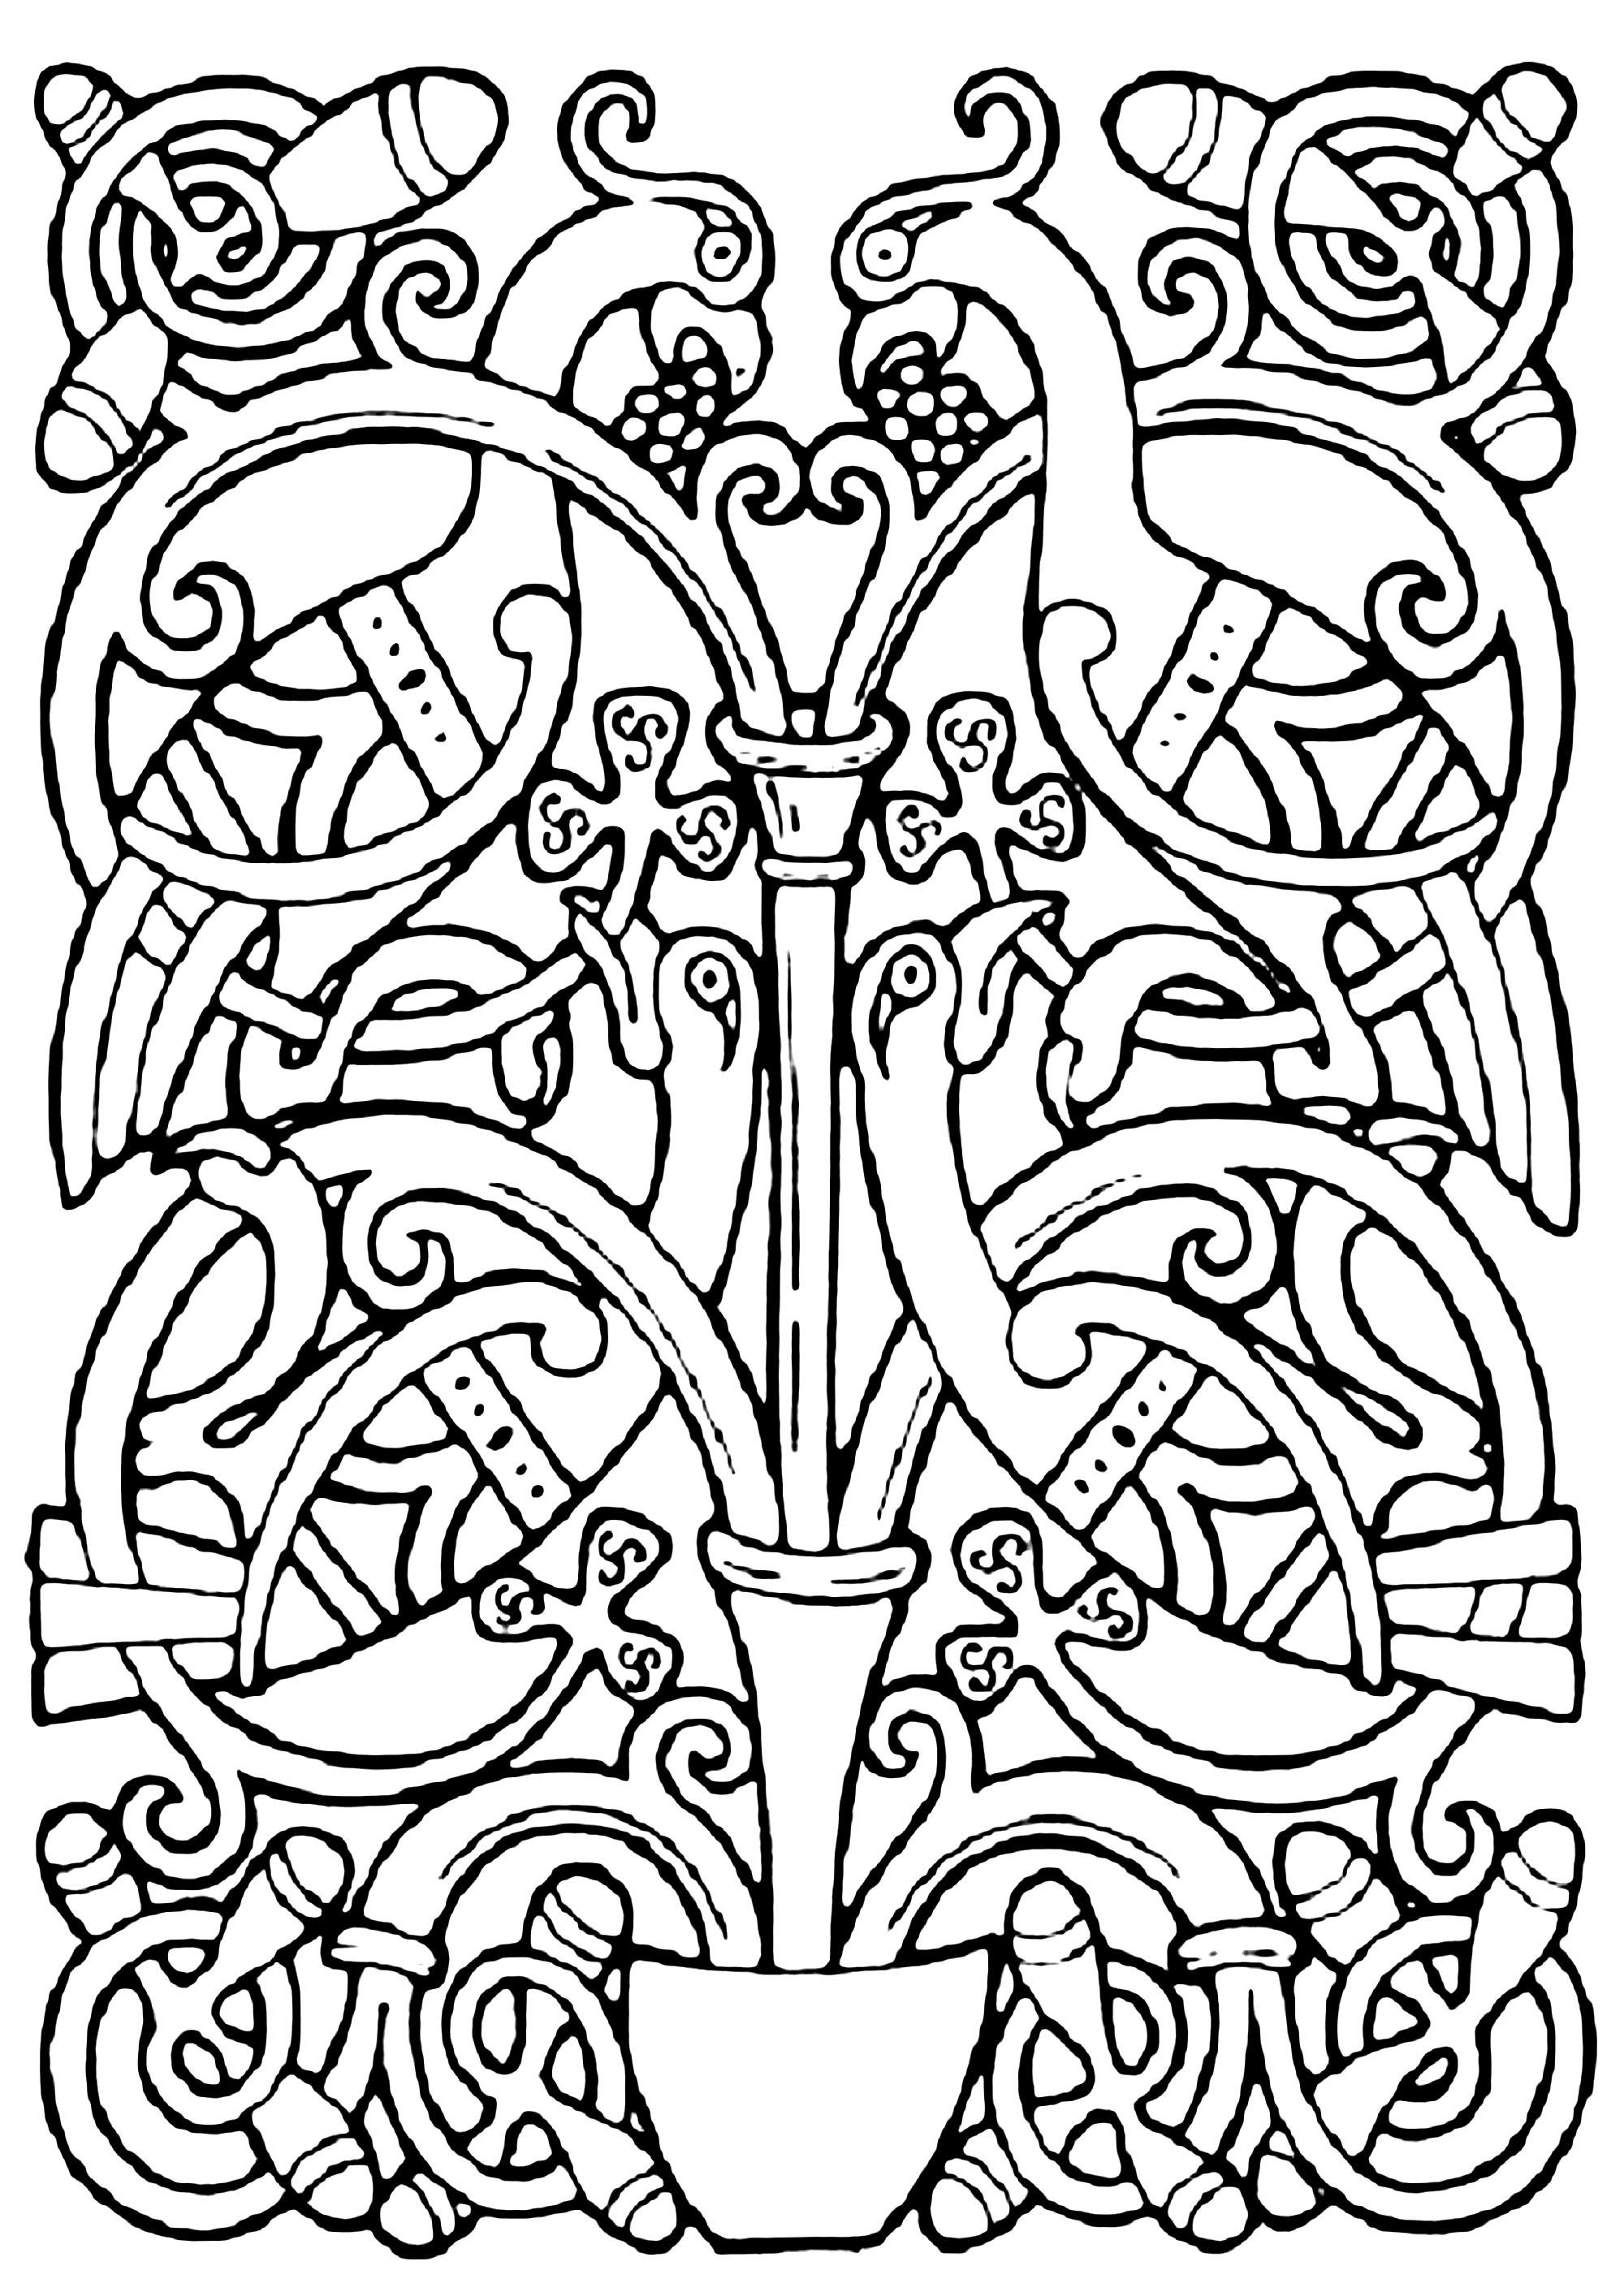 Diseño celta de pájaros, con diseños celtas entrelazados. Esta ilustración se parece a las que se encuentran en manuscritos medievales como El Libro de Kells.